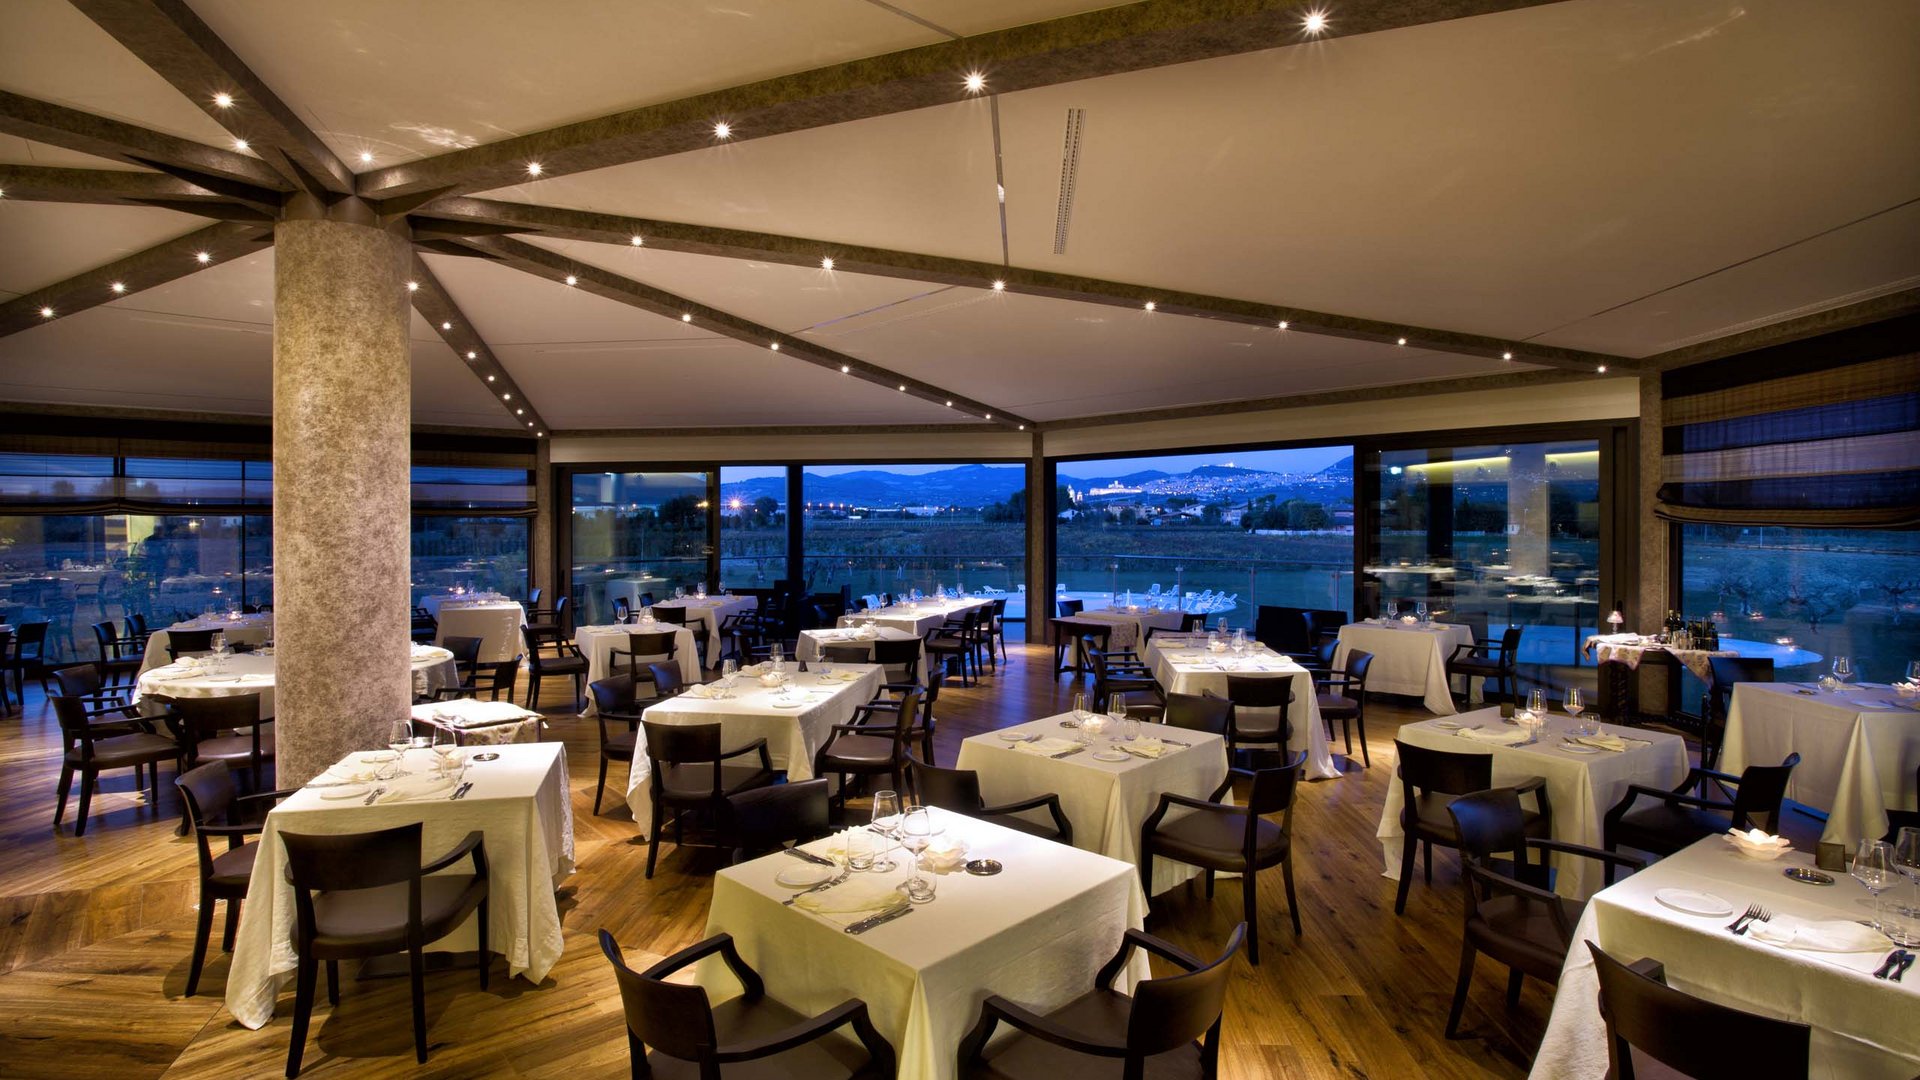 Hotel con ristorante vicino ad Assisi: benvenuti al Recanto